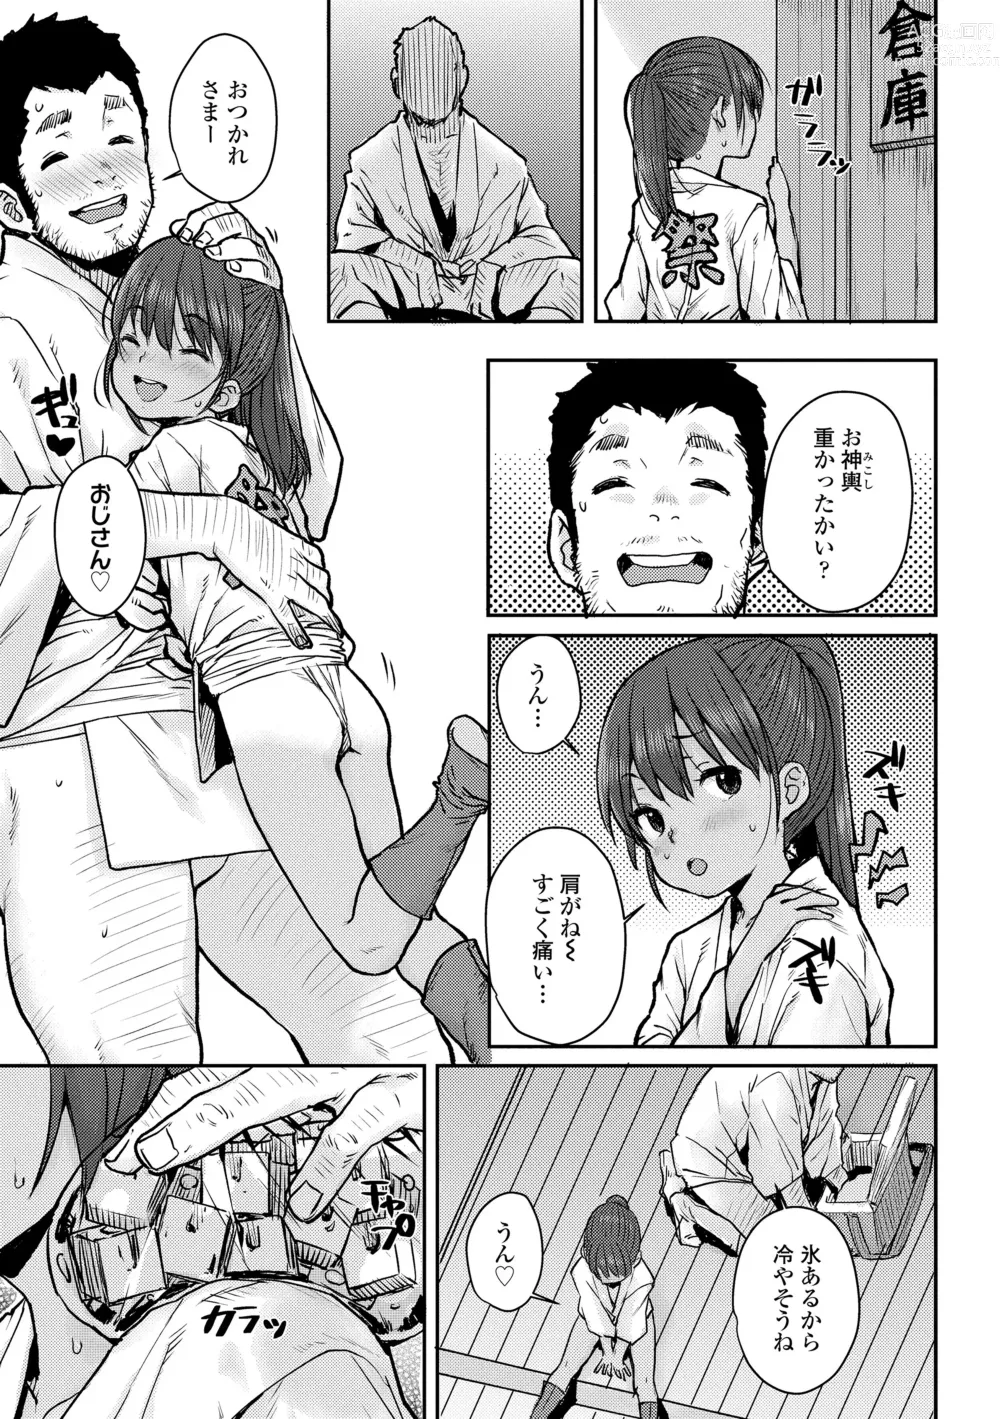 Page 7 of manga Love Love Dakko Shiyo - Love Love hug me